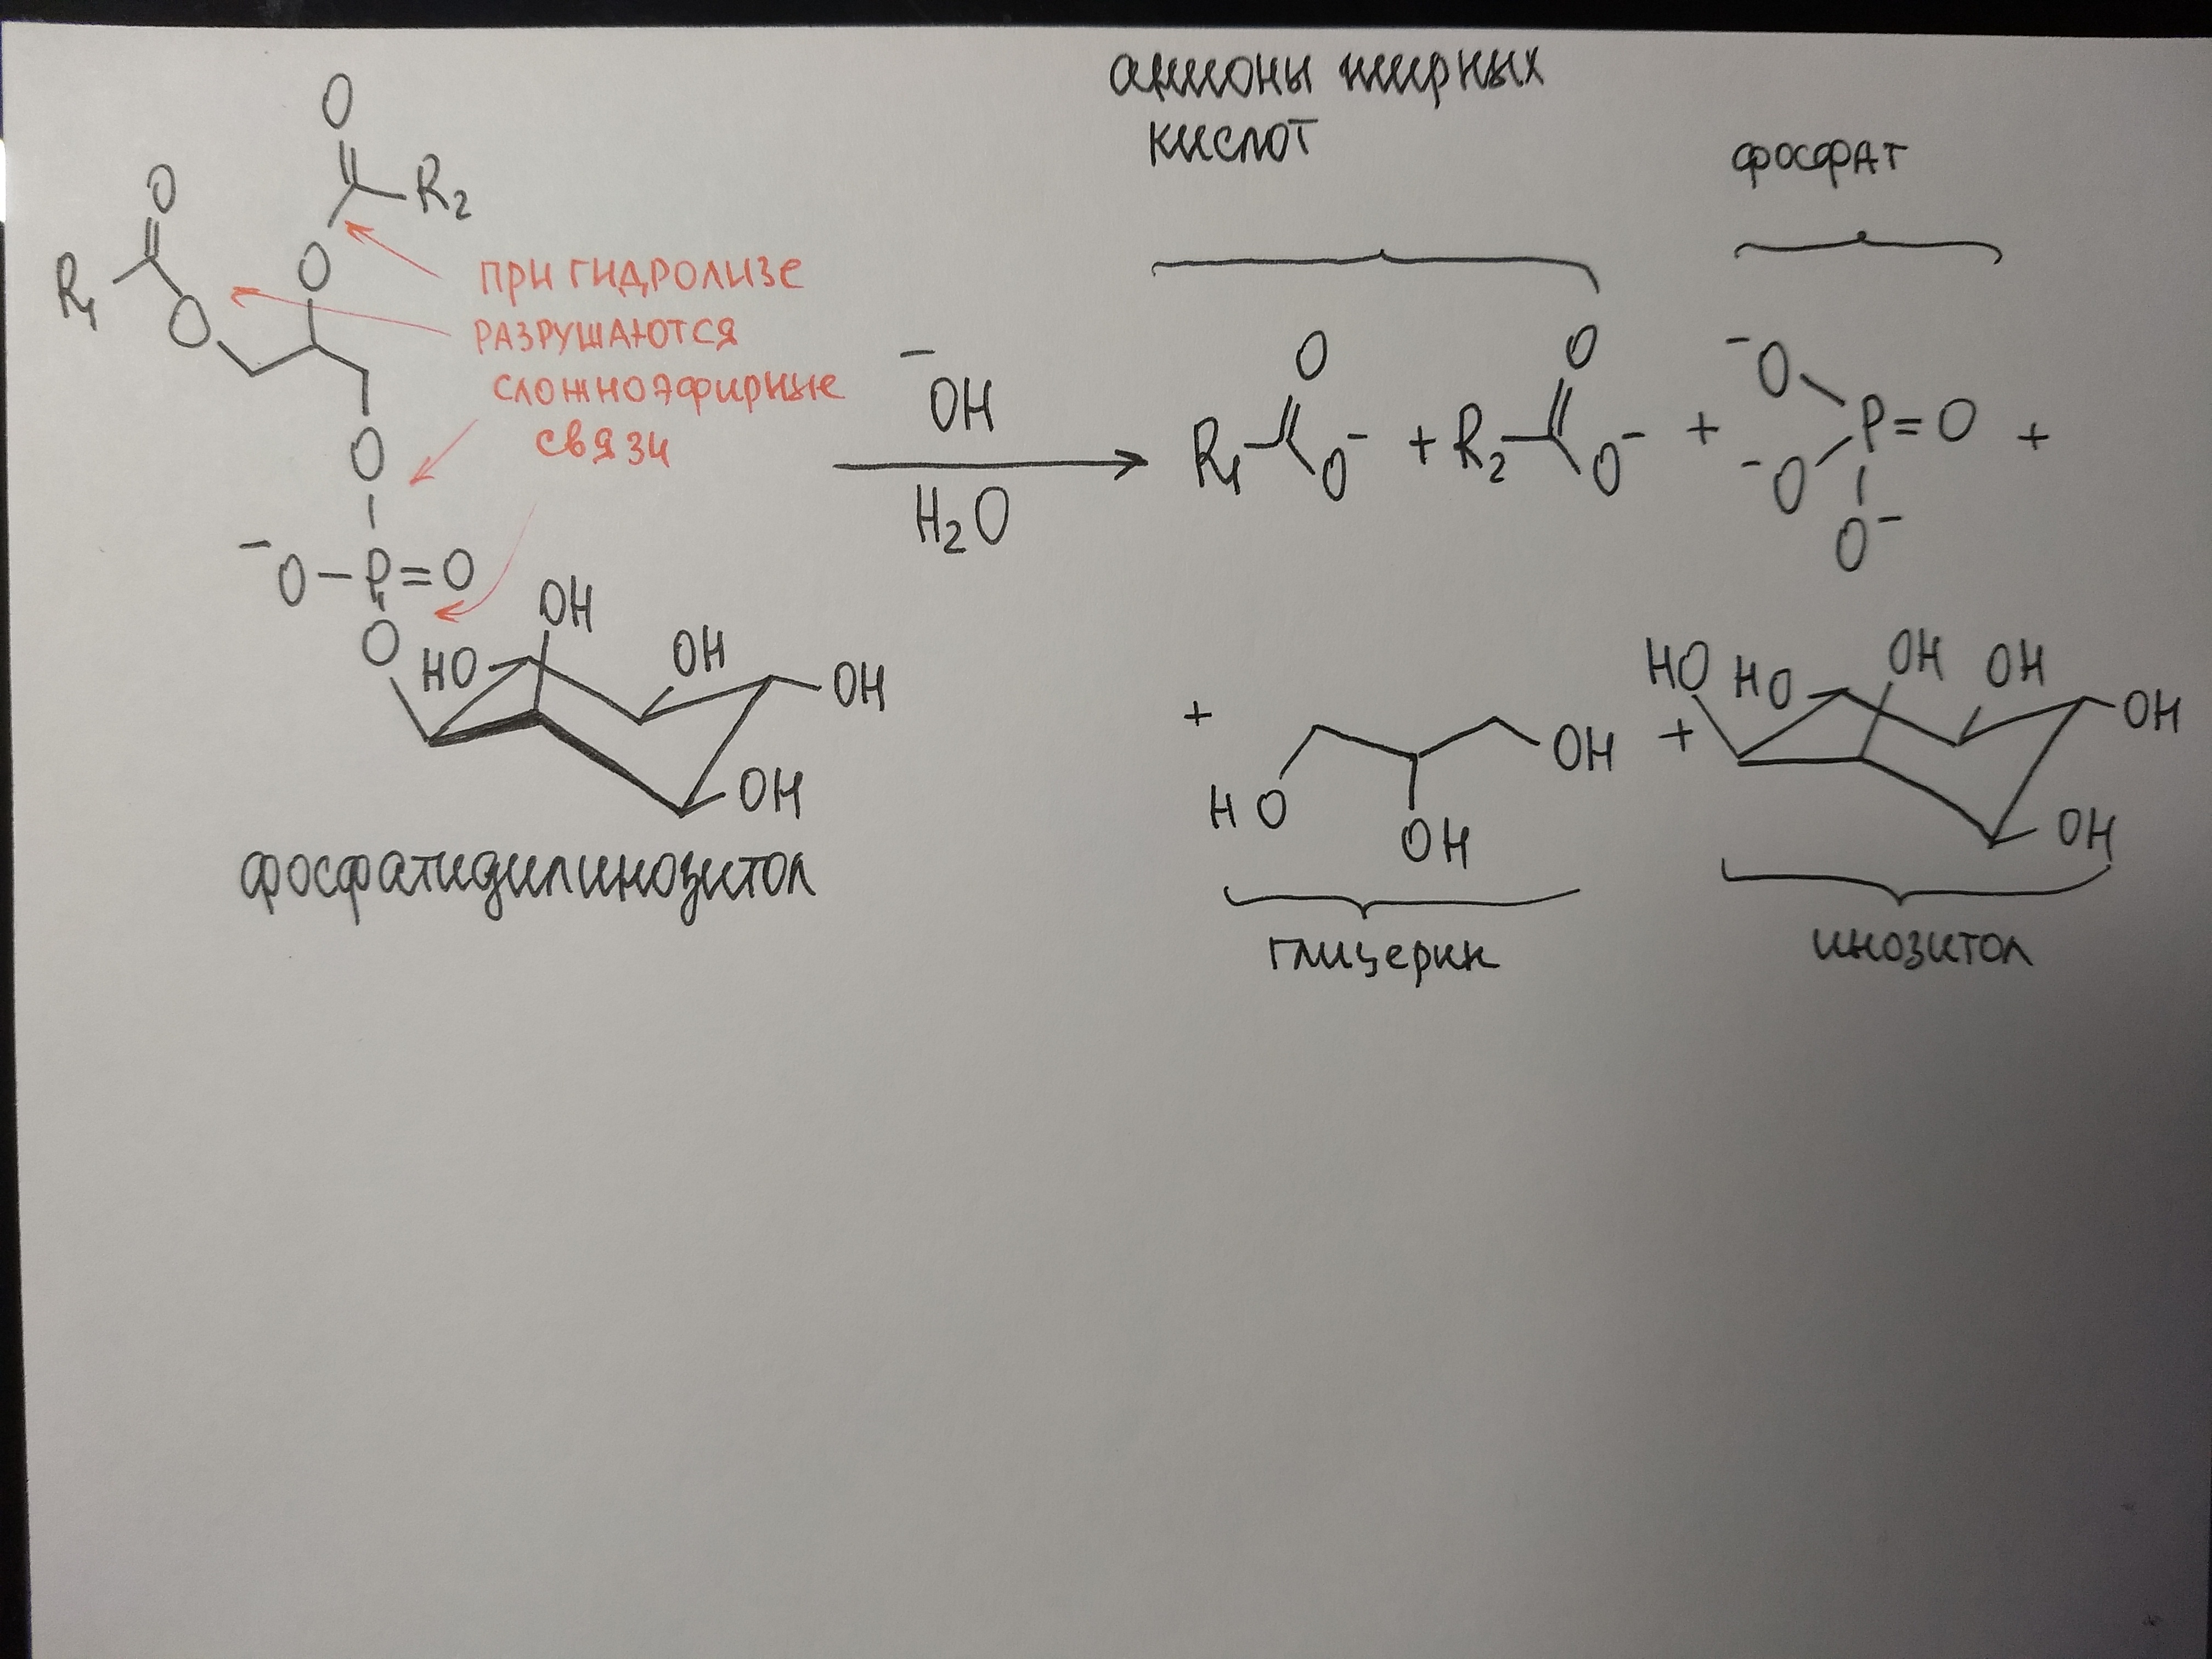 Гидролиз дисахаридов, уравнения и примеры